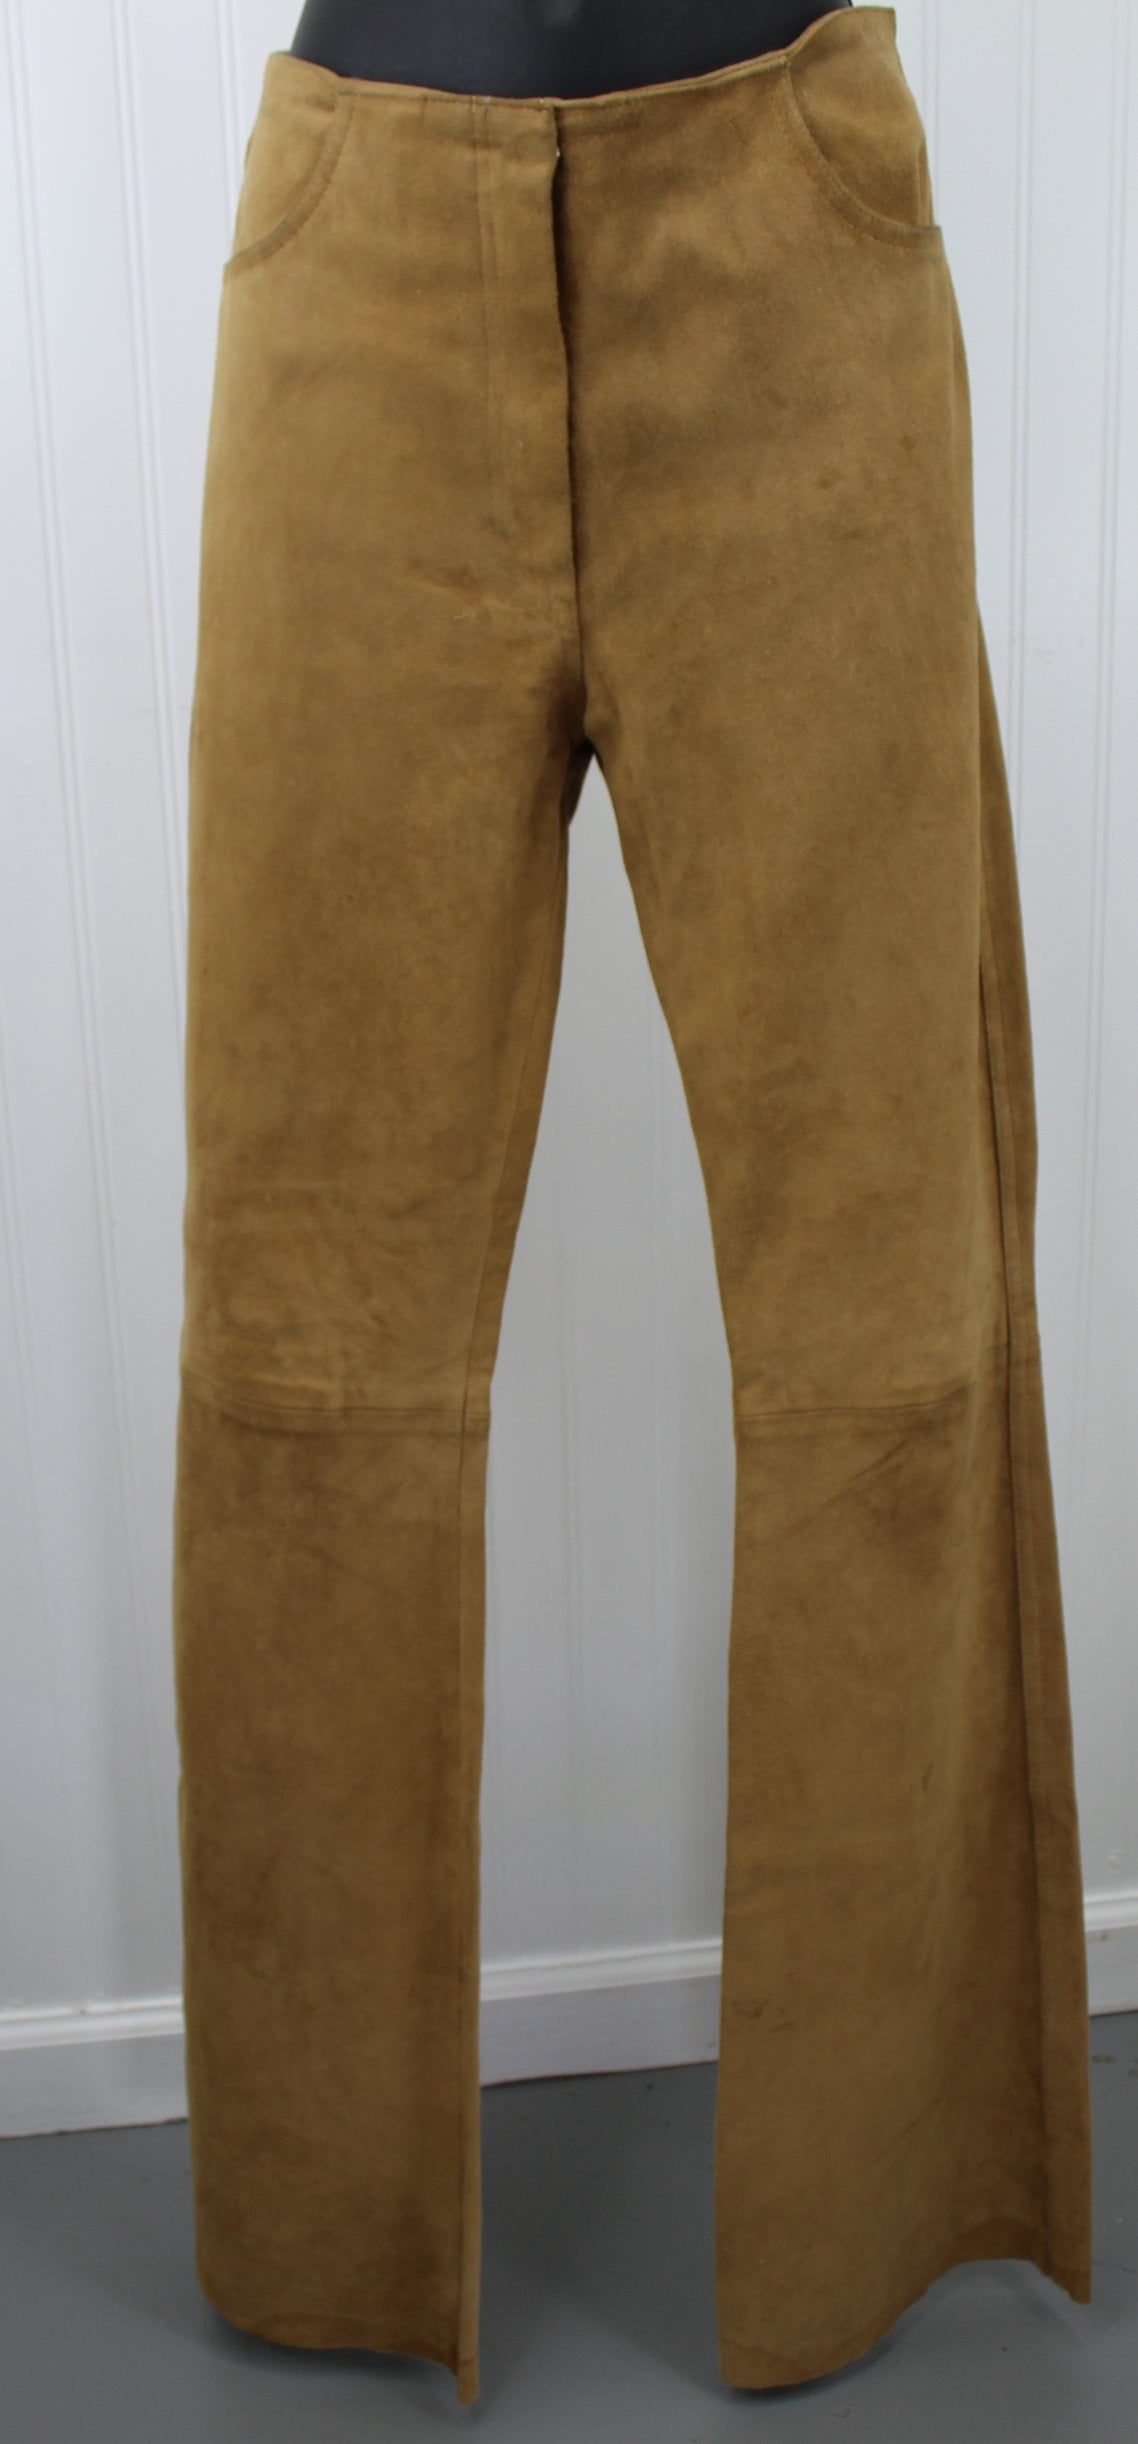 Jean Claude Jitrois France Vintage Womens Suede Leather Pants - Flare Leg Chevre Velour Size 40  - 32" Waist bohemian cut